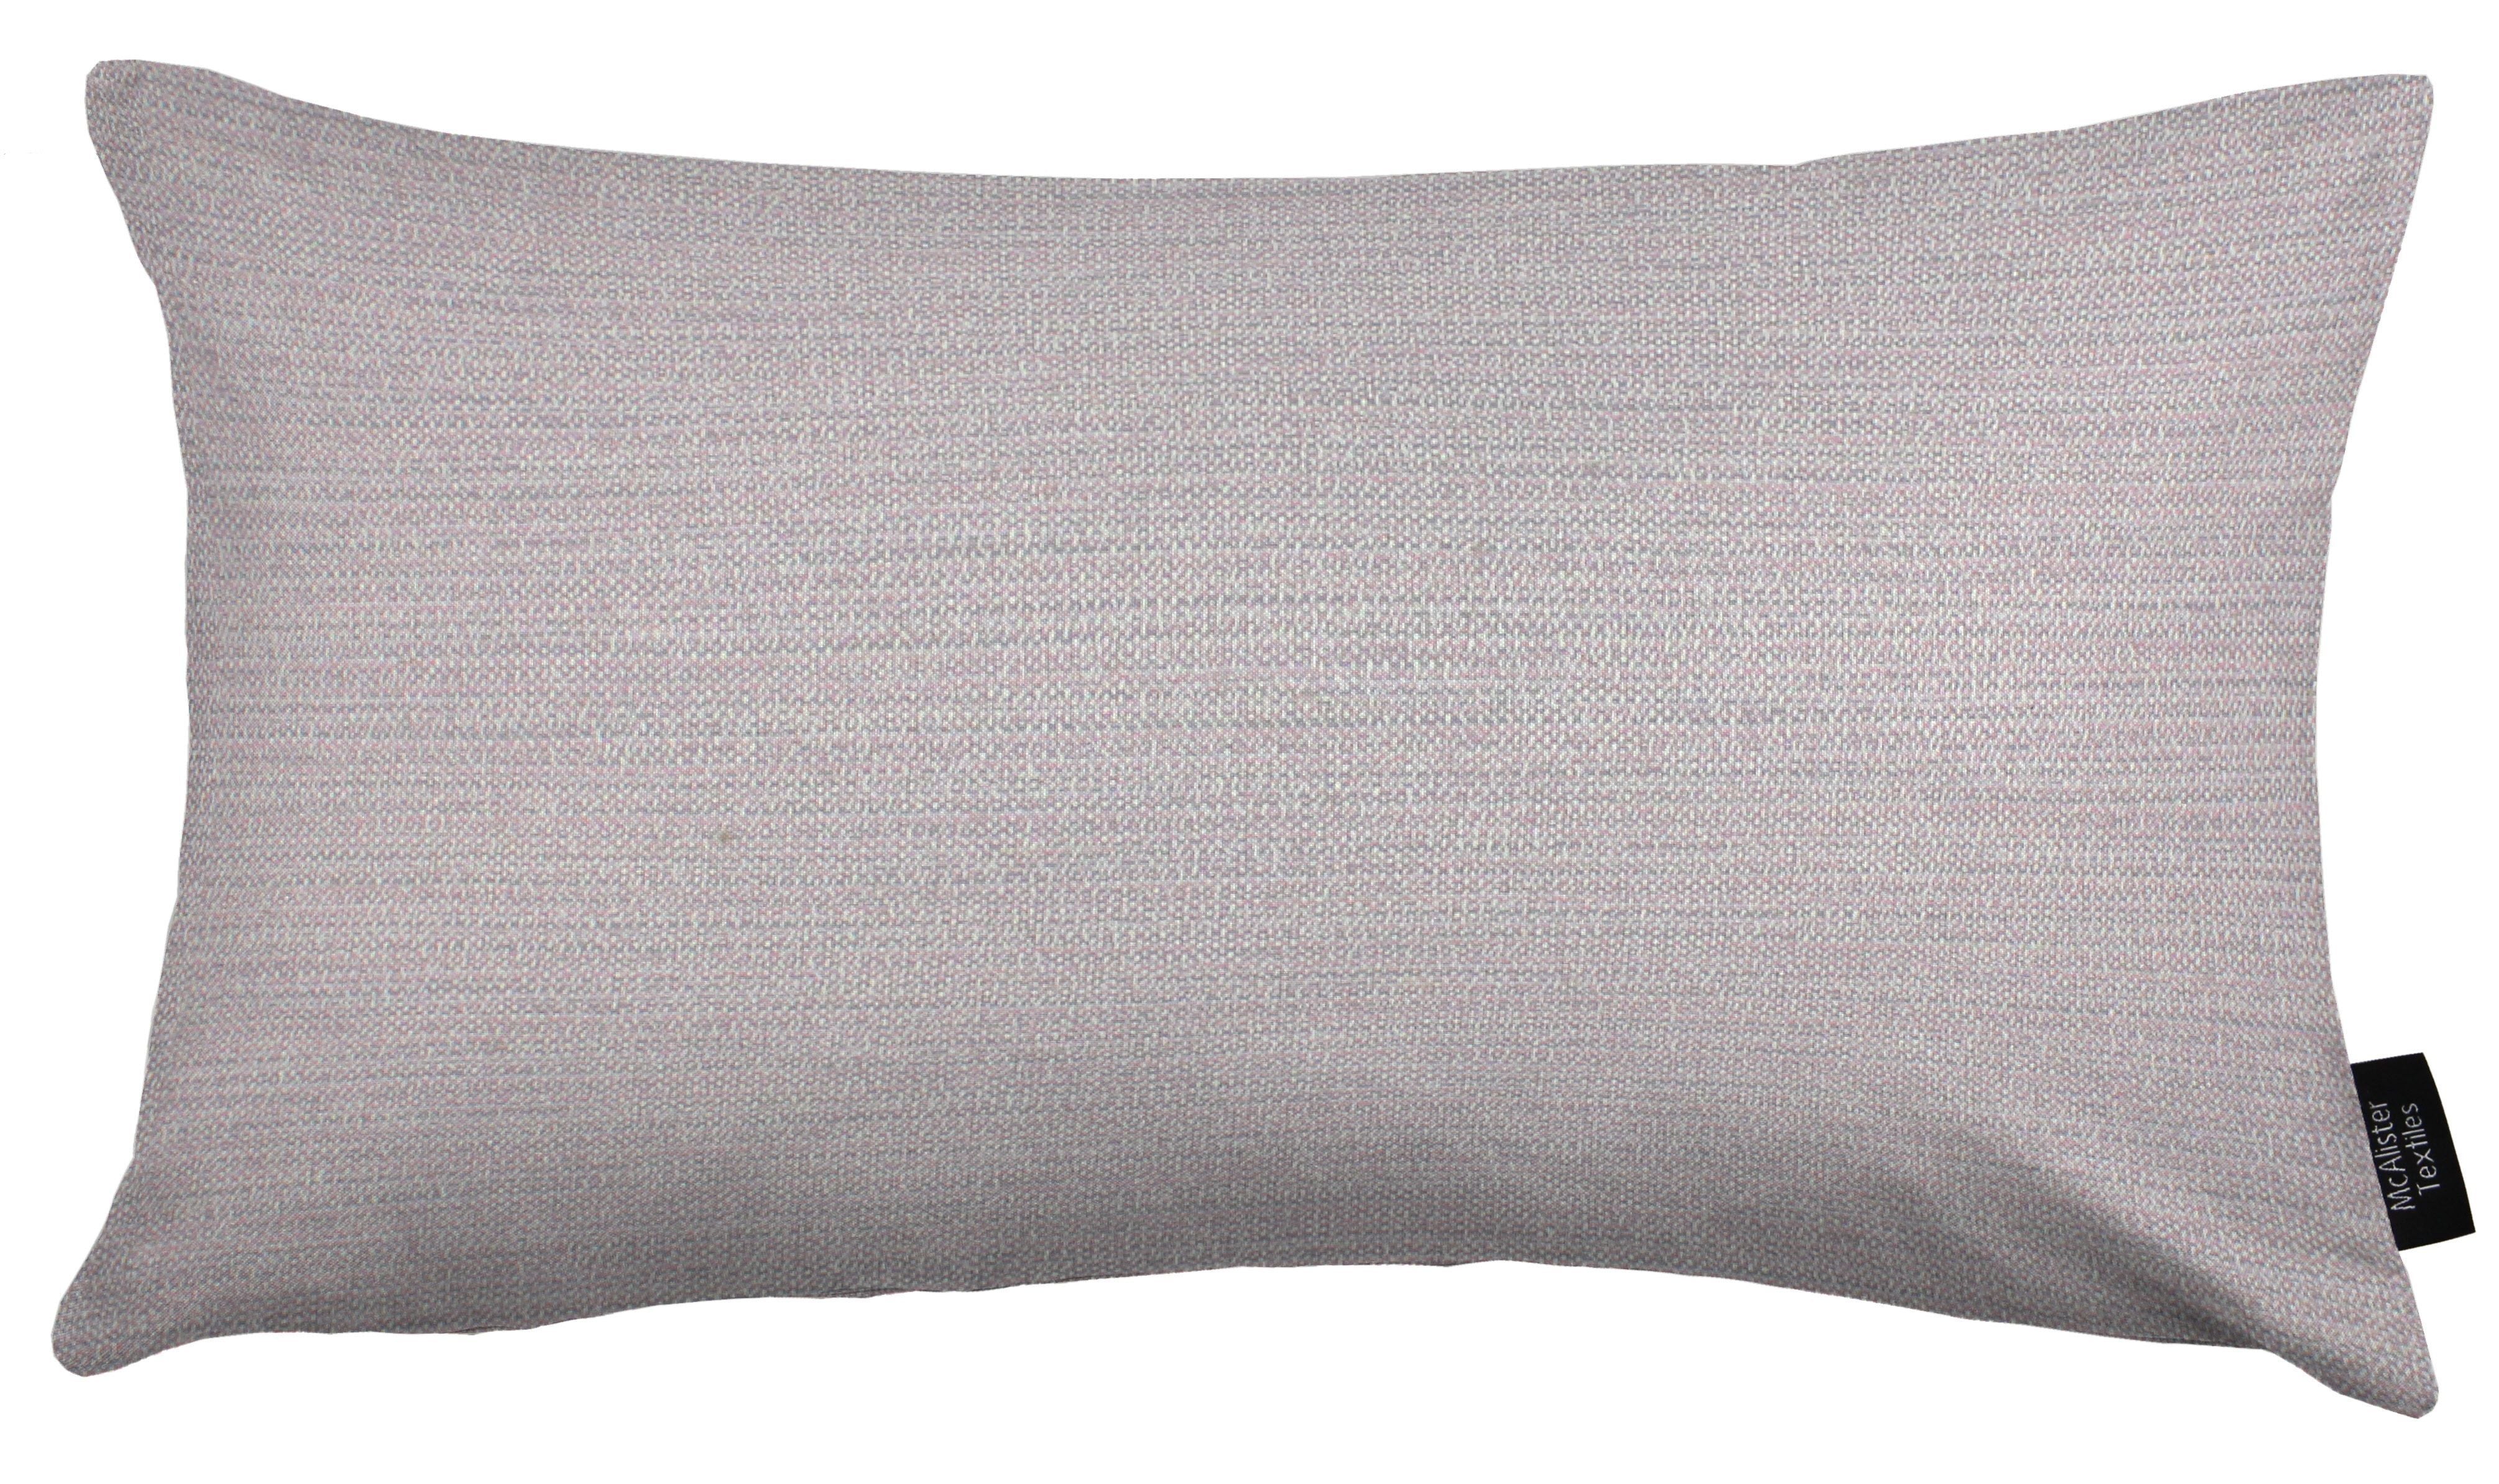 McAlister Textiles Hamleton Lilac Purple Textured Plain Pillow Pillow Cover Only 50cm x 30cm 